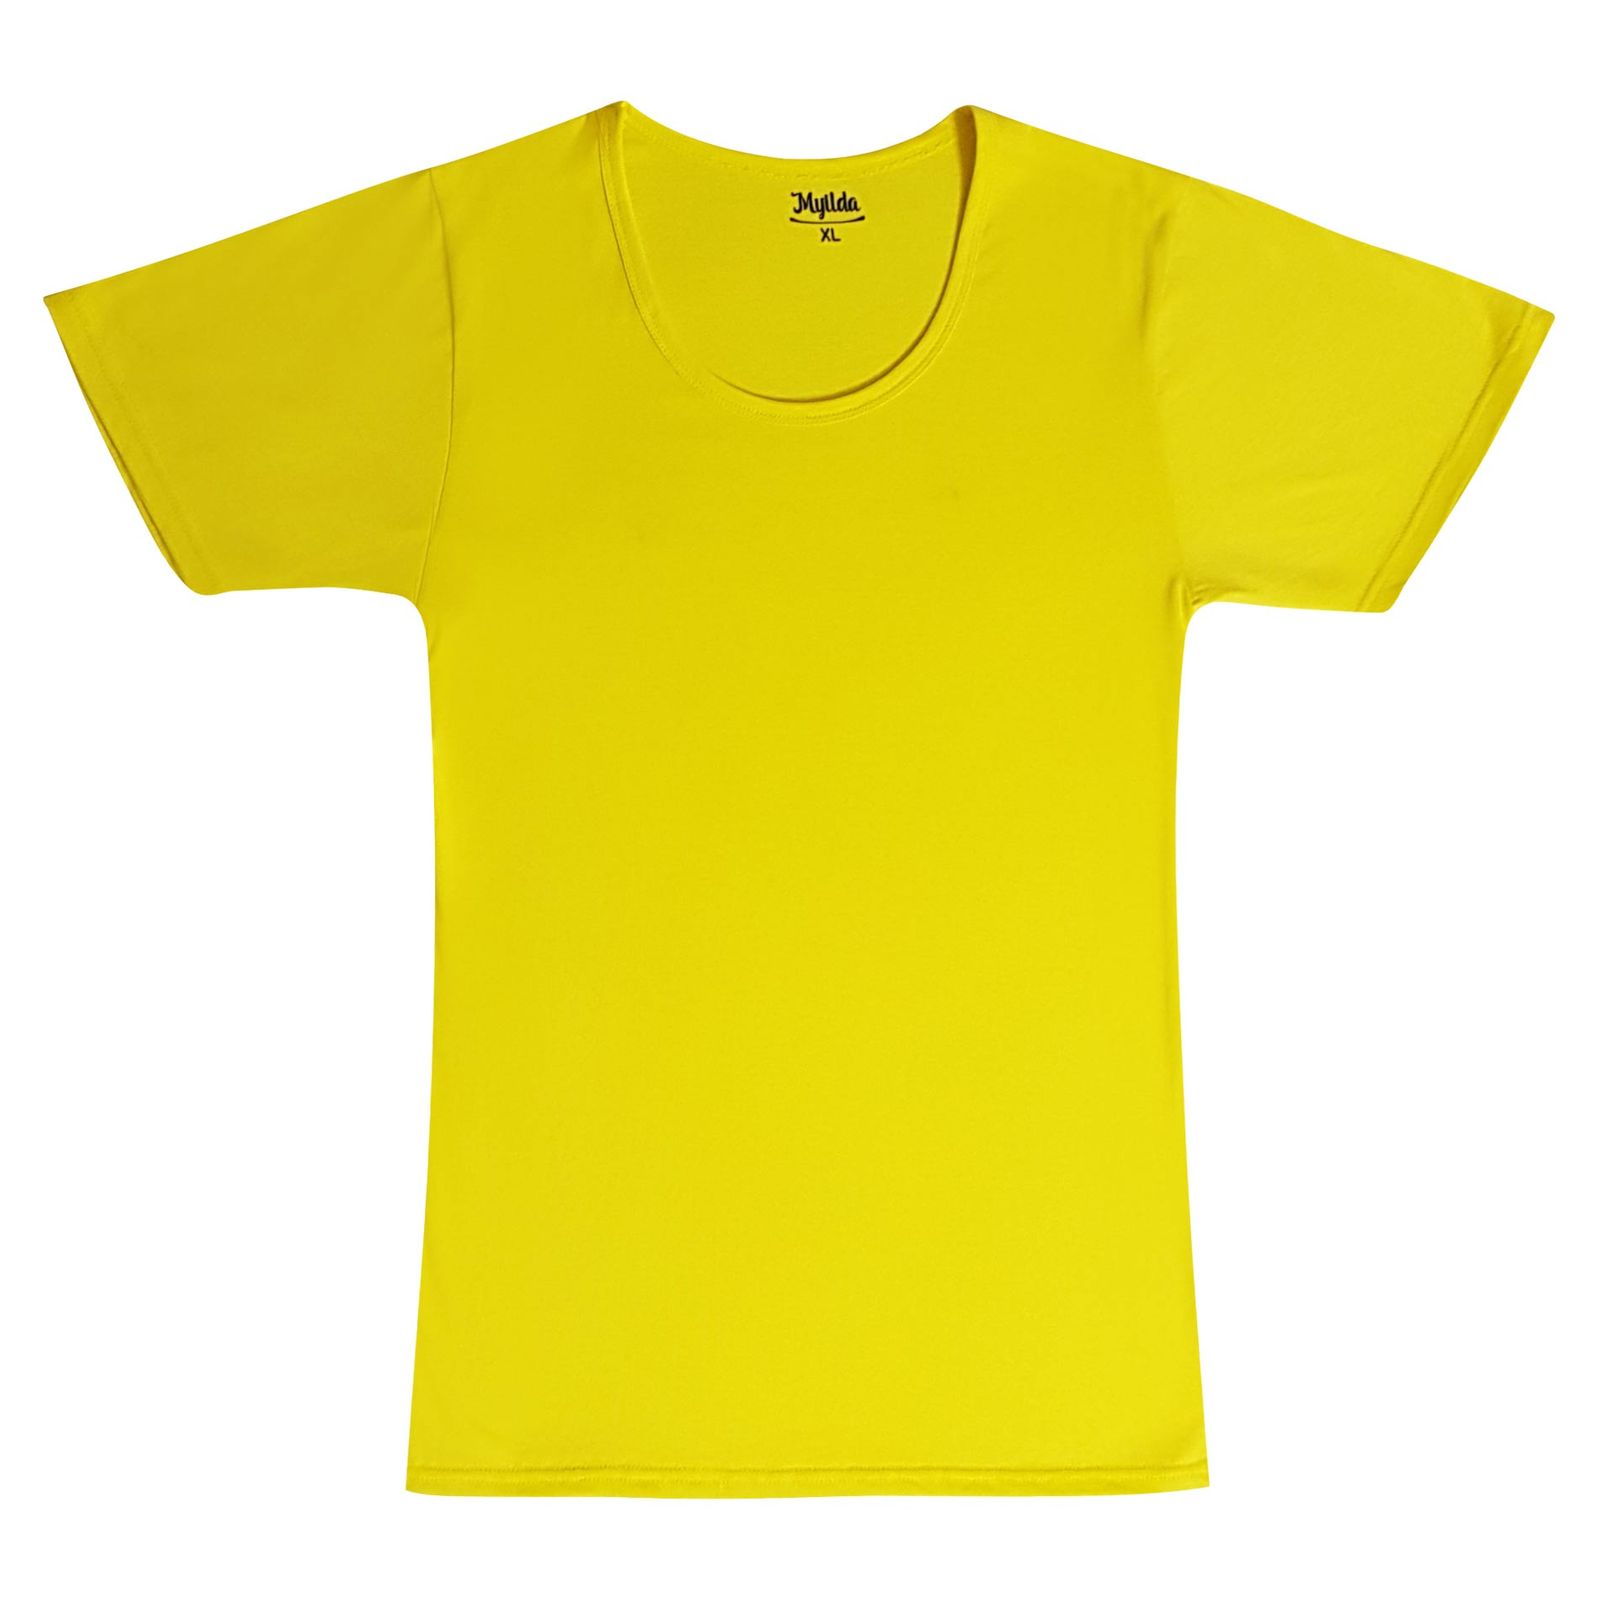 زیرپوش آستین دار مردانه ماییلدا مدل پنبه ای کد 4710 رنگ زرد -  - 5